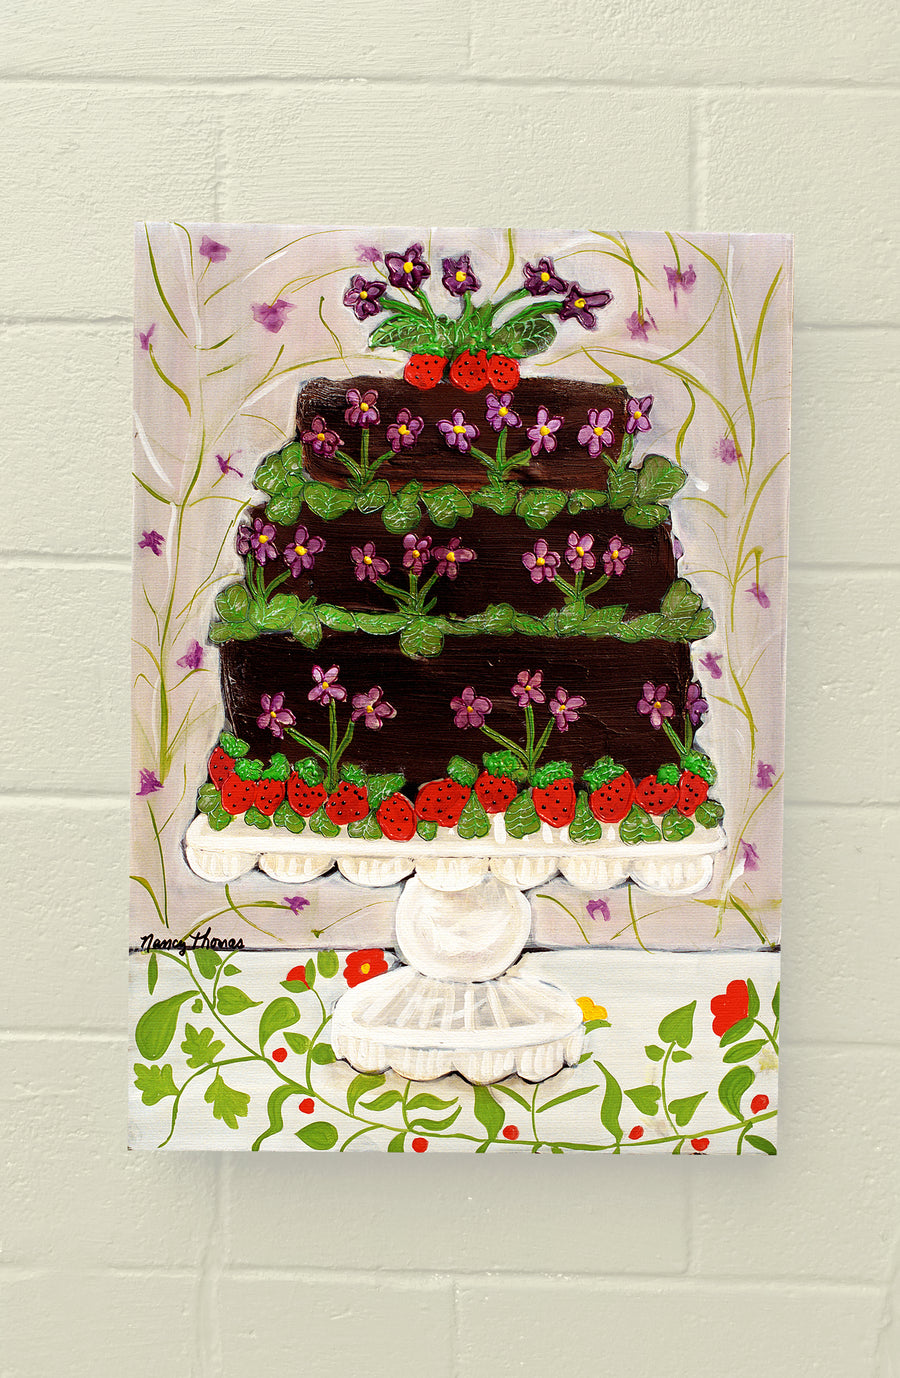 Gallery Grand - CAKE - Honeybee Cake